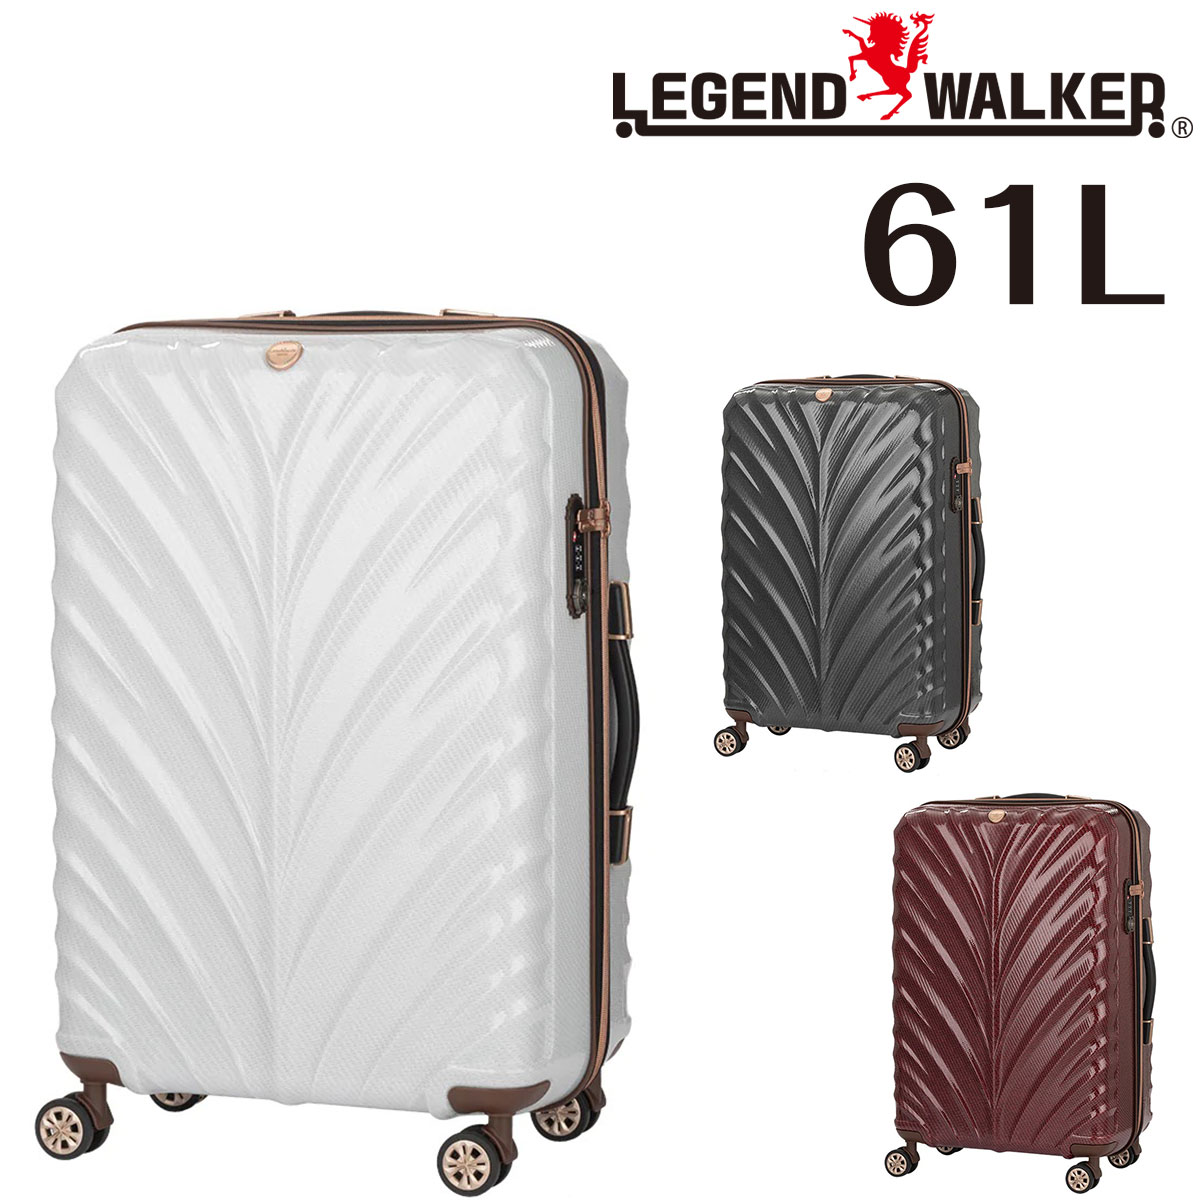 【メーカー直送】 レジェンドウォーカー LEGEND WALKER リース WREATH スーツケース キャリー ハード 中型 61L 5〜7泊程度 Mサイズ ファ